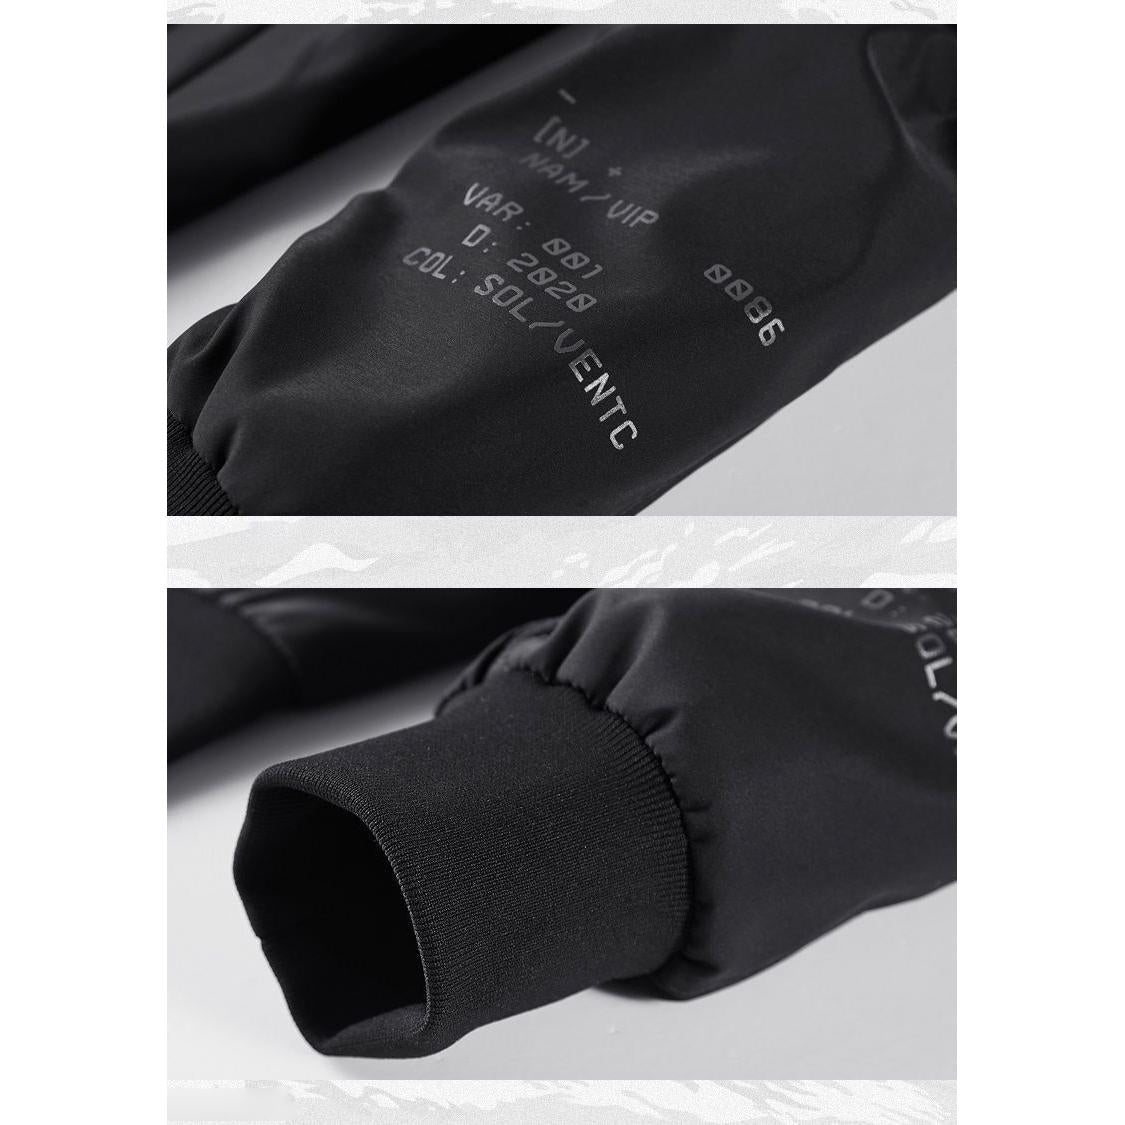 جاكيت بومبر بتصميم ملابس العمل متعدد الجيوب.